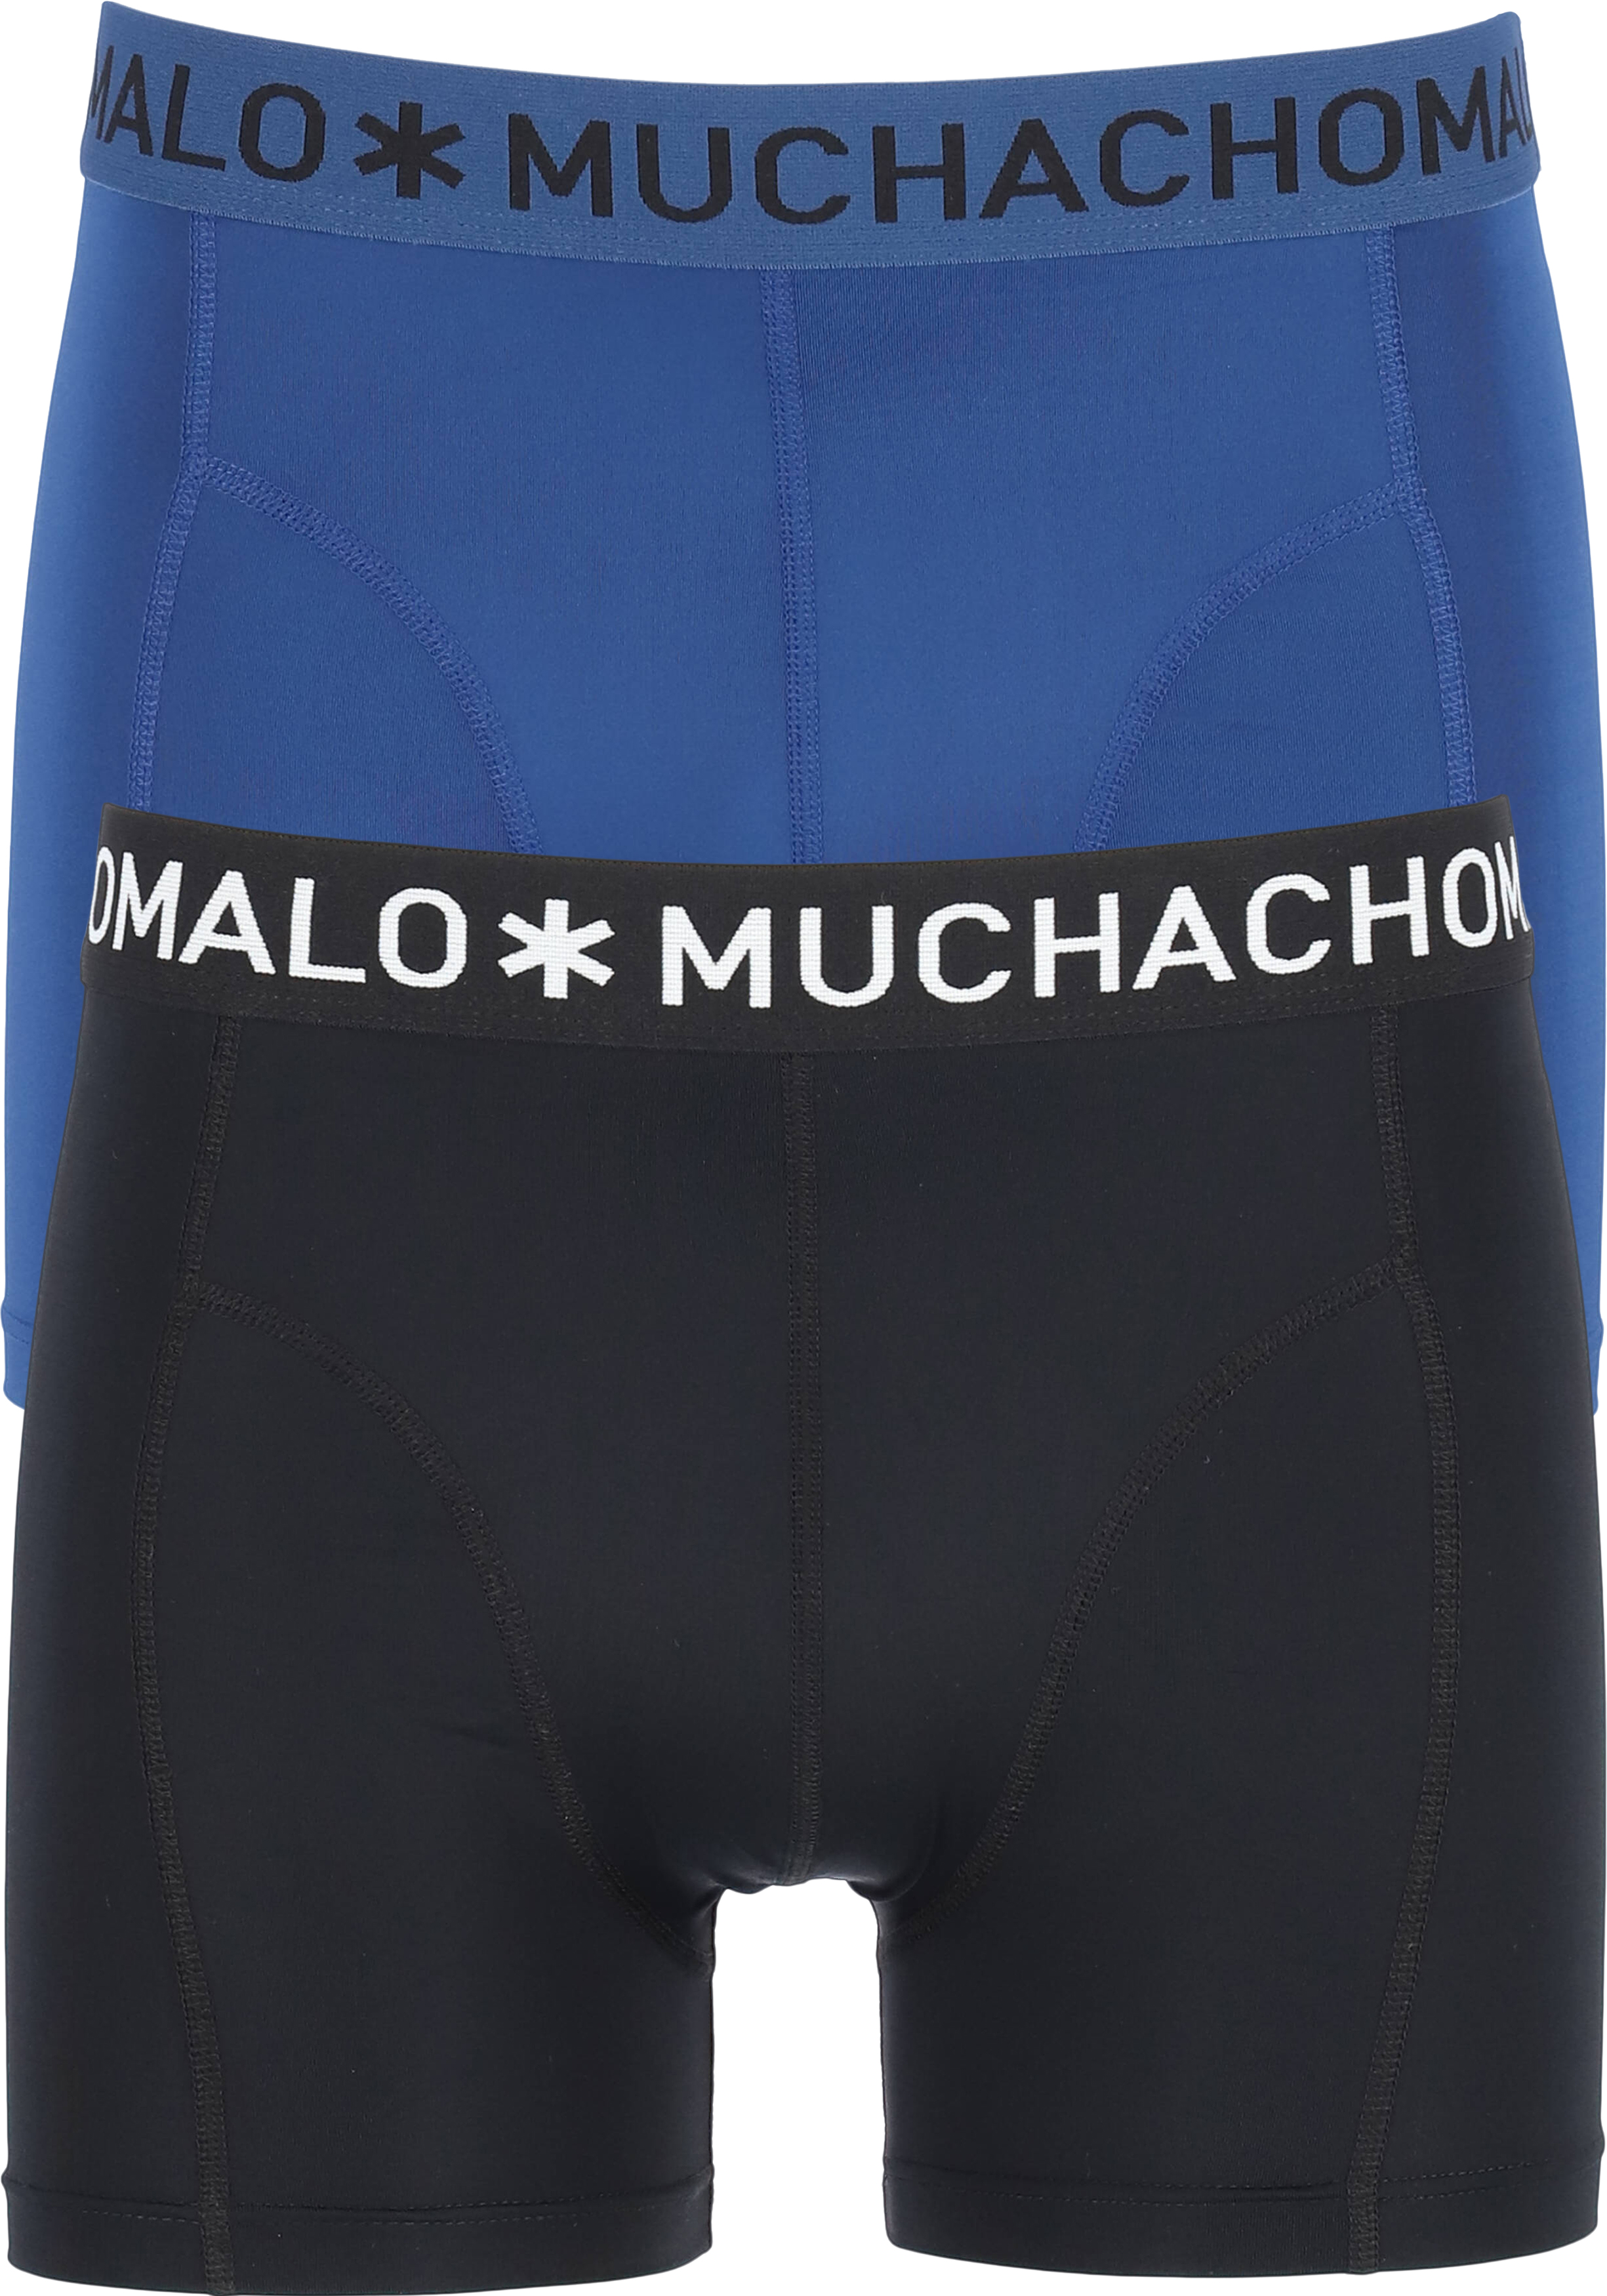 Muchchomalo microfiber boxershorts (2-pack), heren boxers normale lengte, zwart en blauw